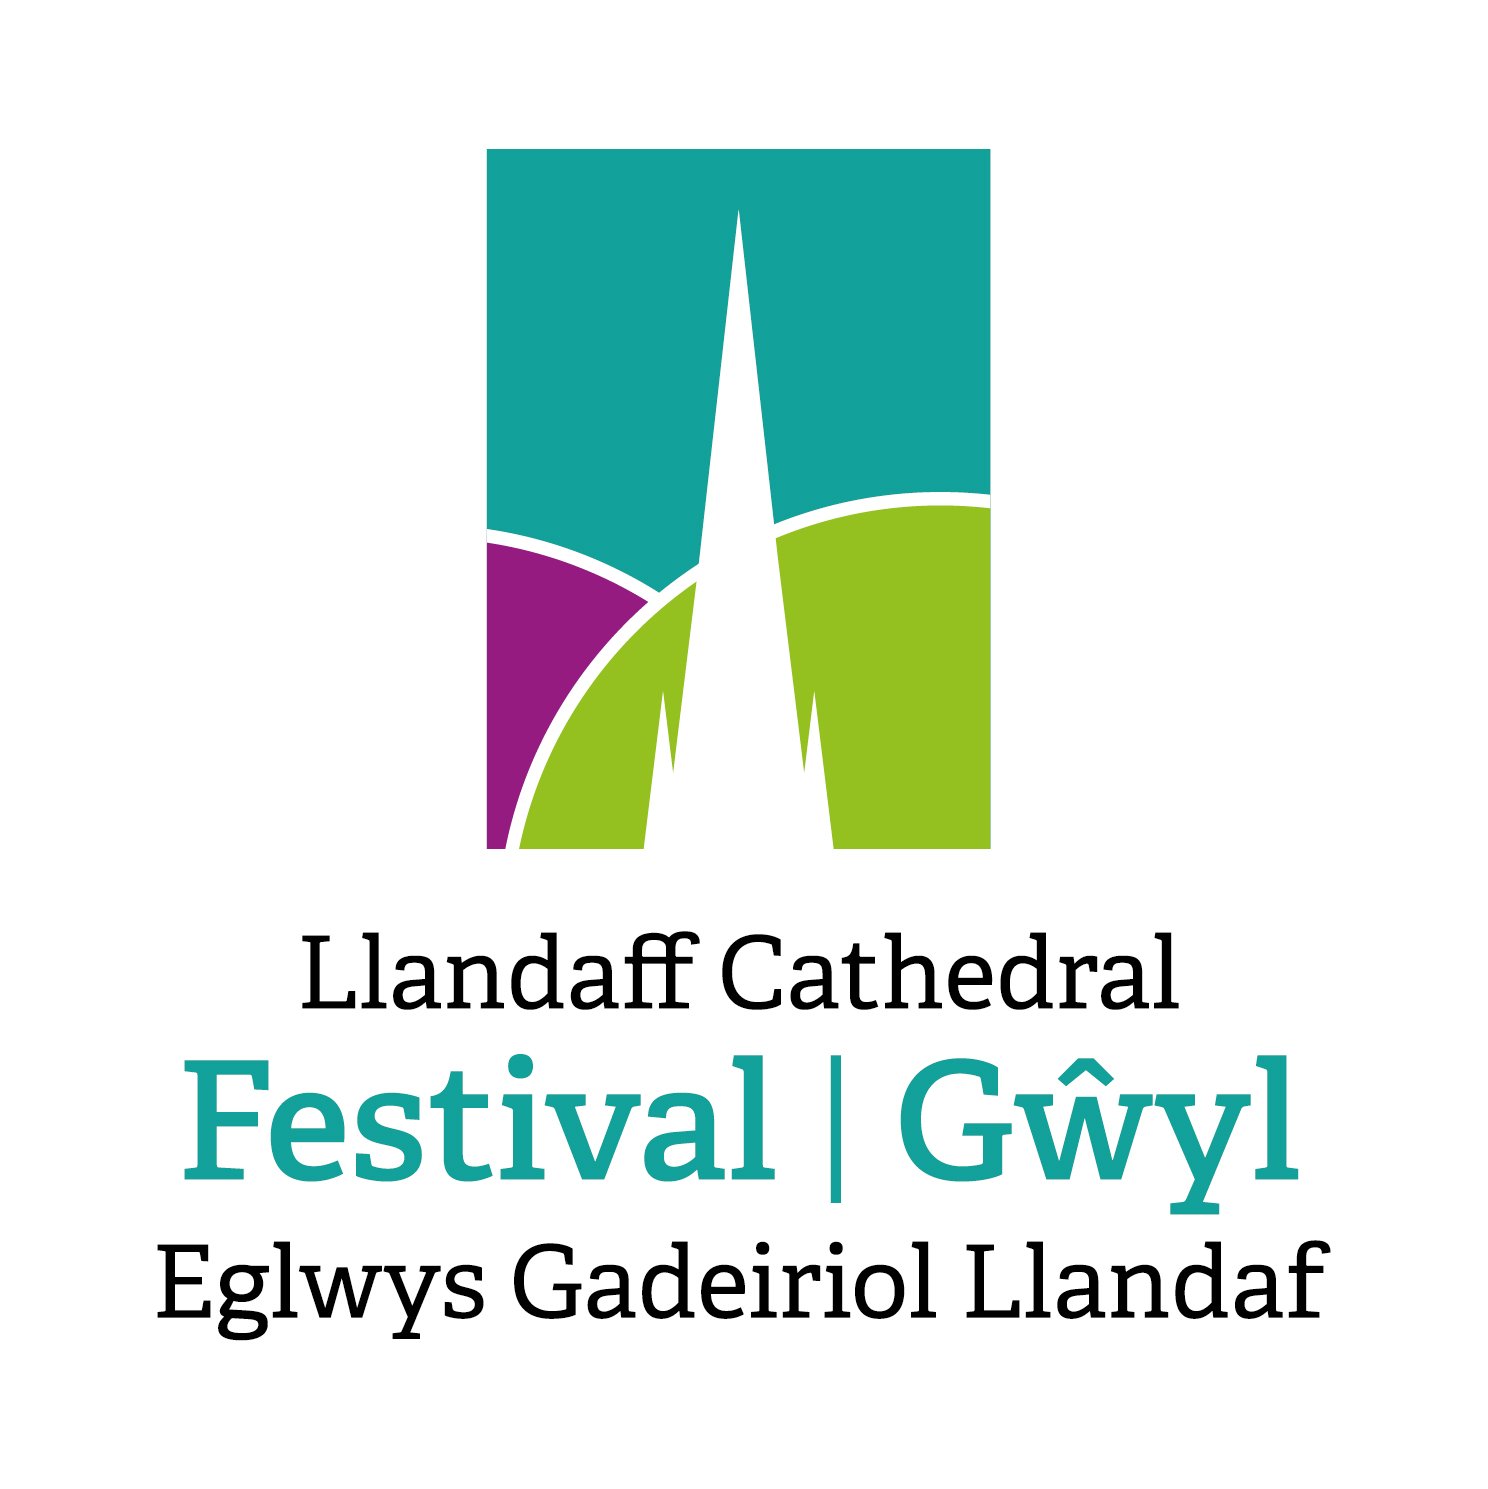 Llandaff Cathedral Festival